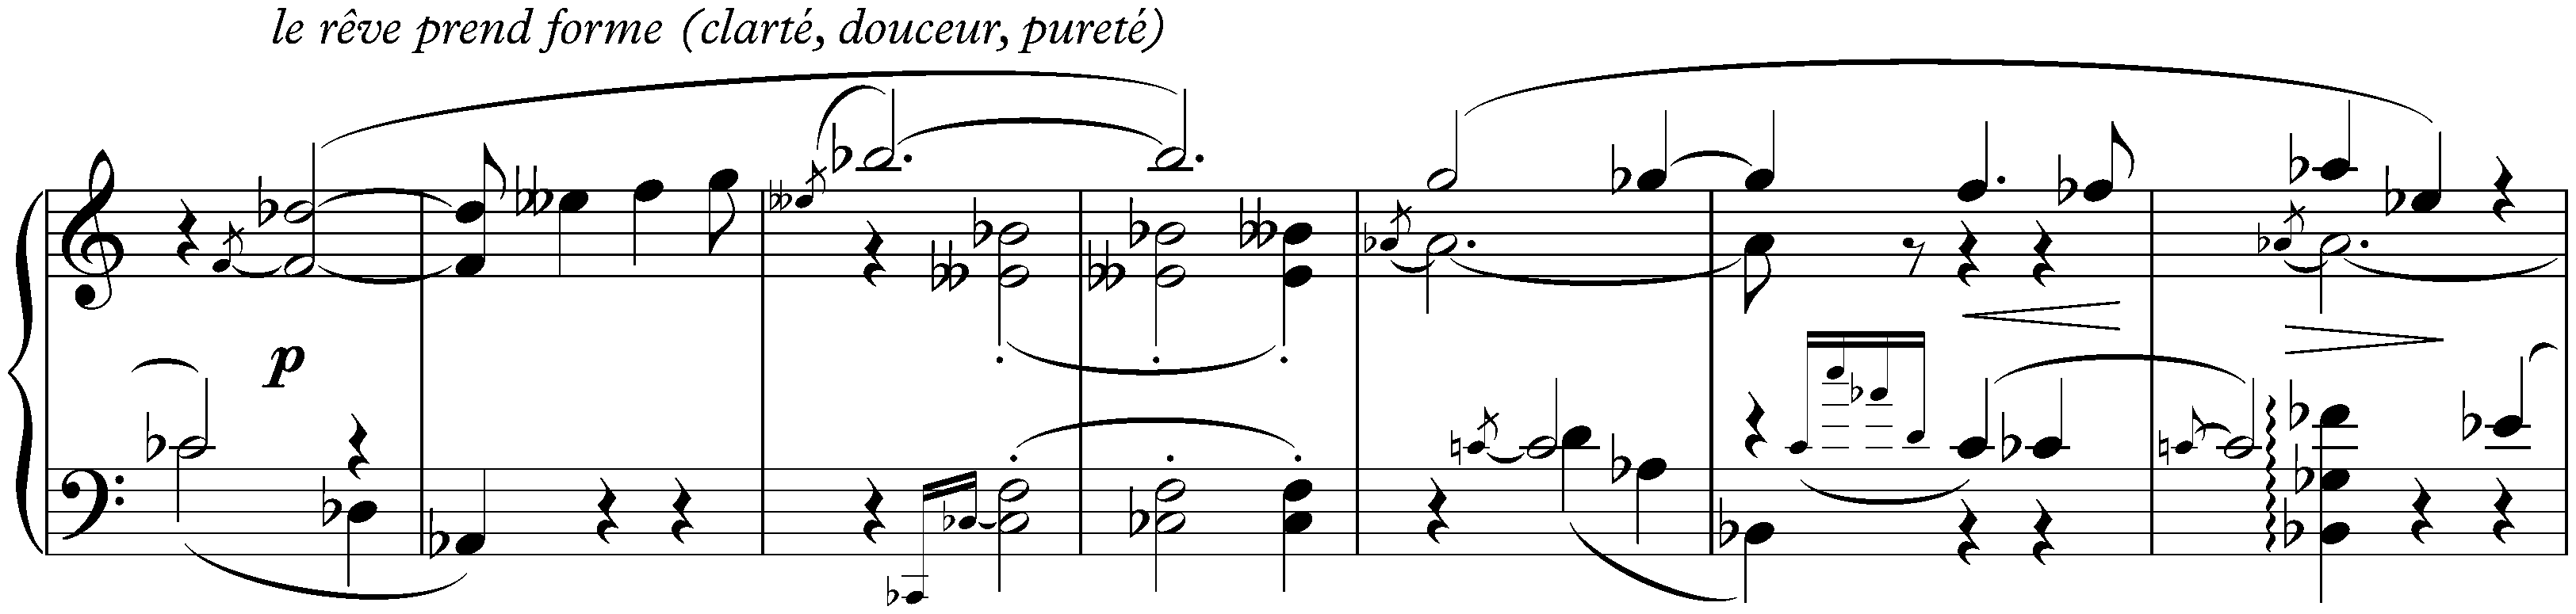 Sonata no. 6, op. 62